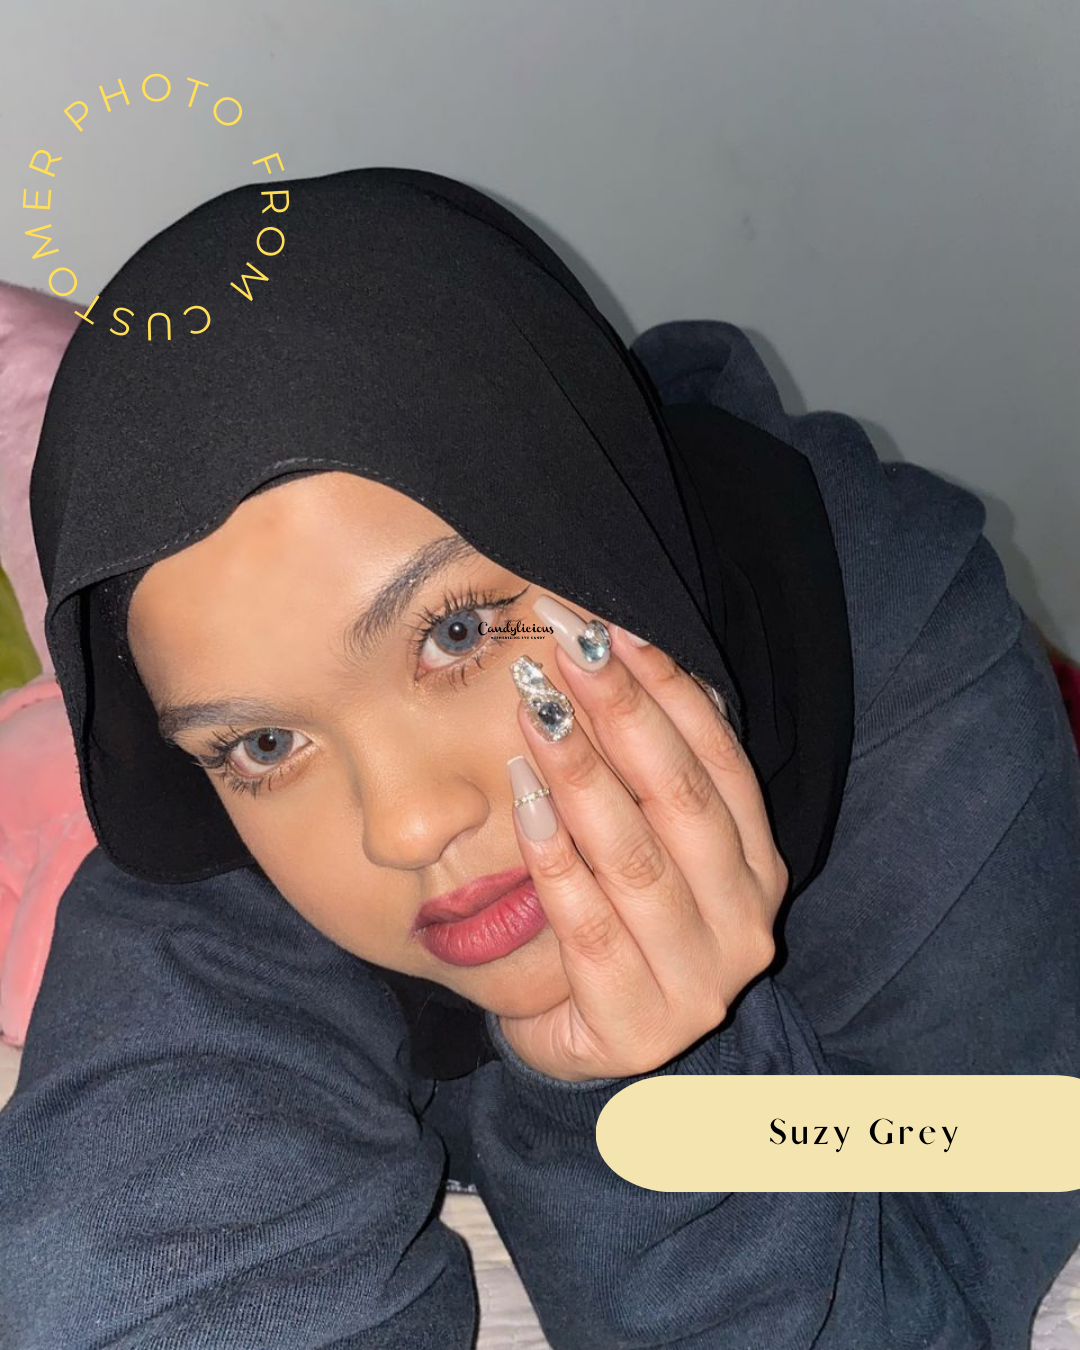 Suzy Grey